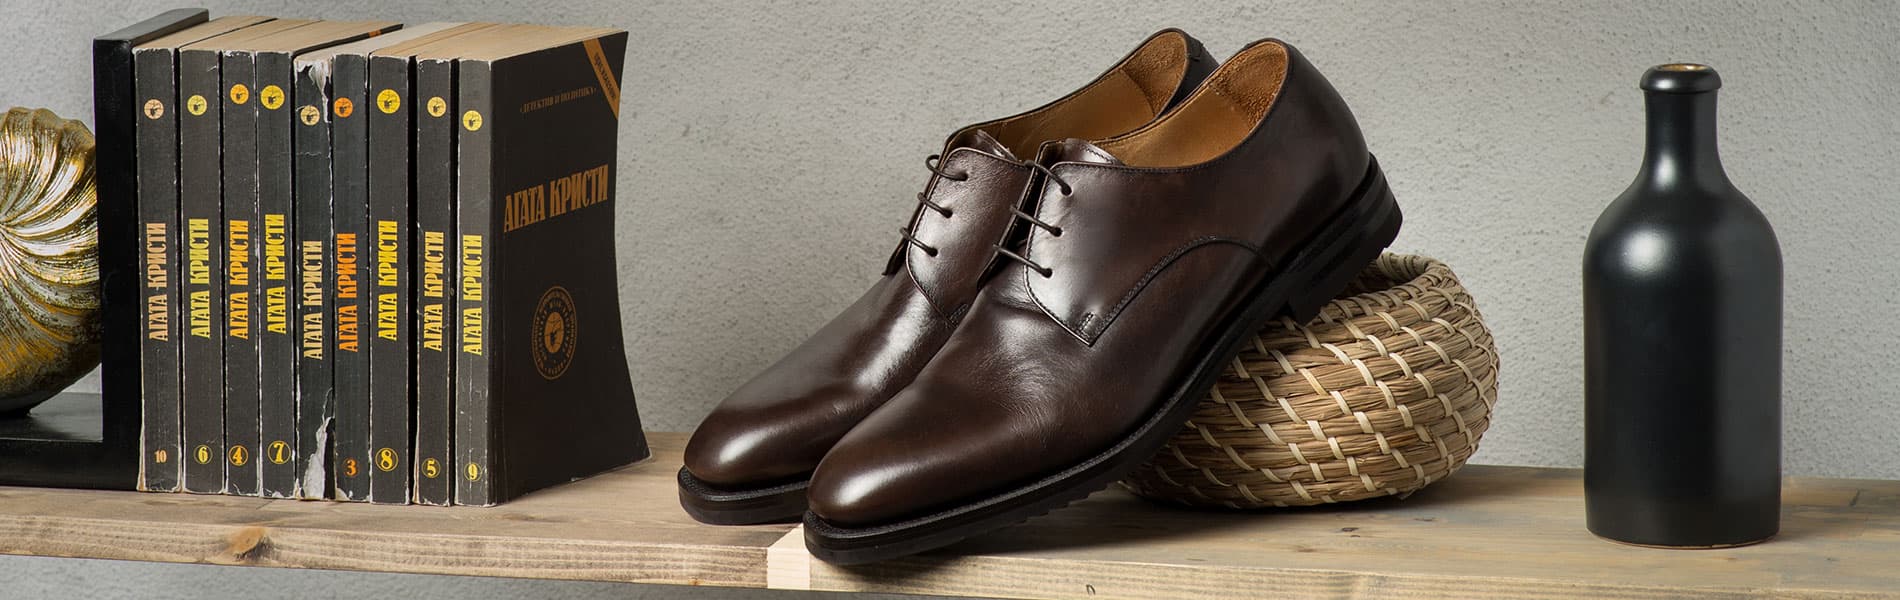 Сочетание обуви с одеждой у мужчины: советы стилистов